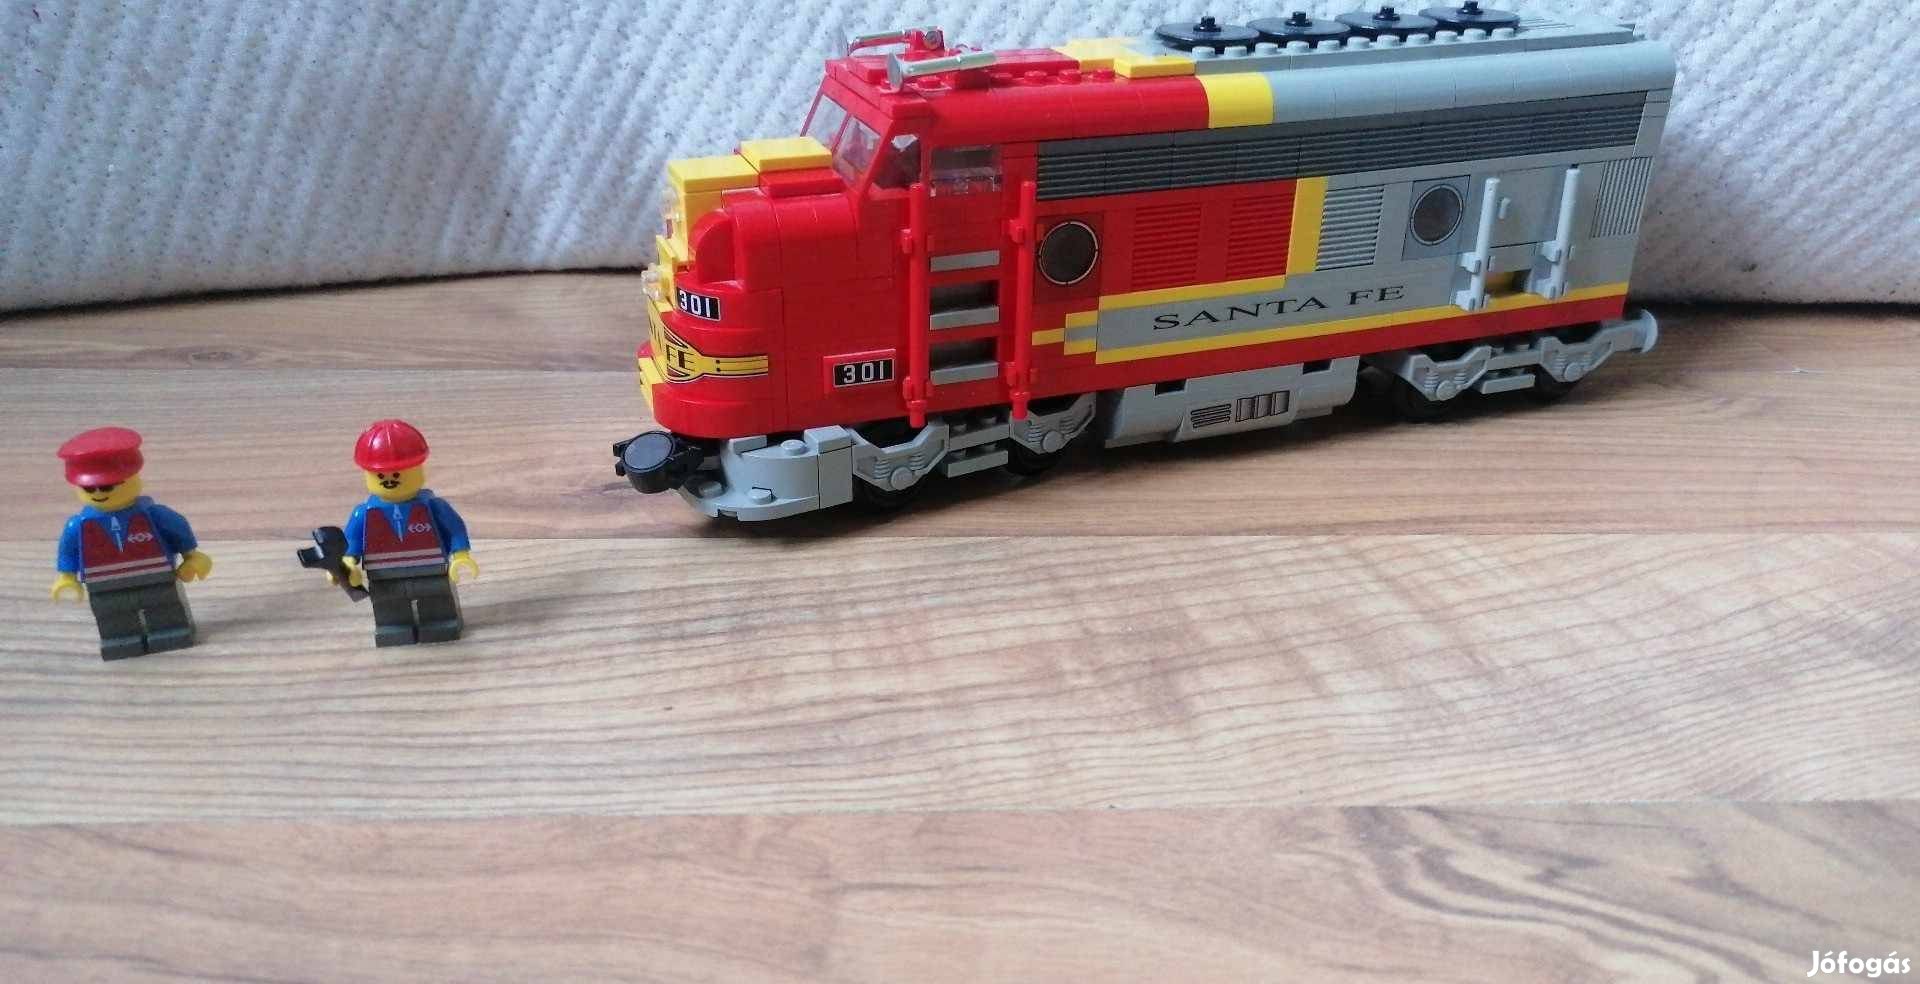 Lego 10020 Santa Fe